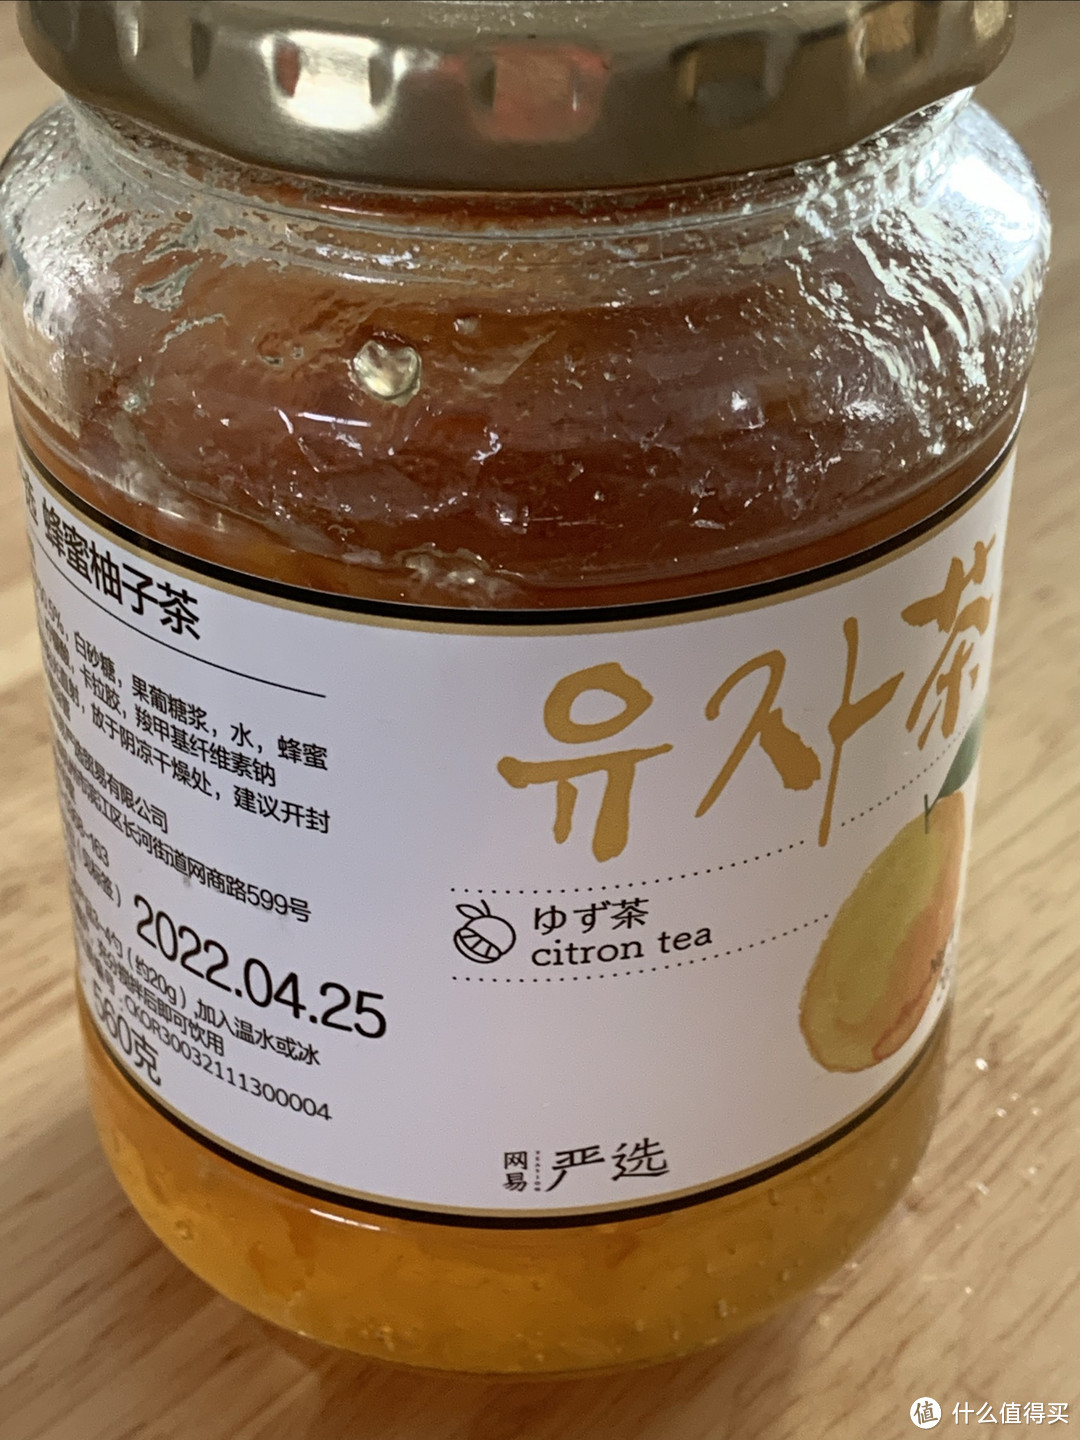 香甜可口的身体有益的蜂蜜柚子茶分享